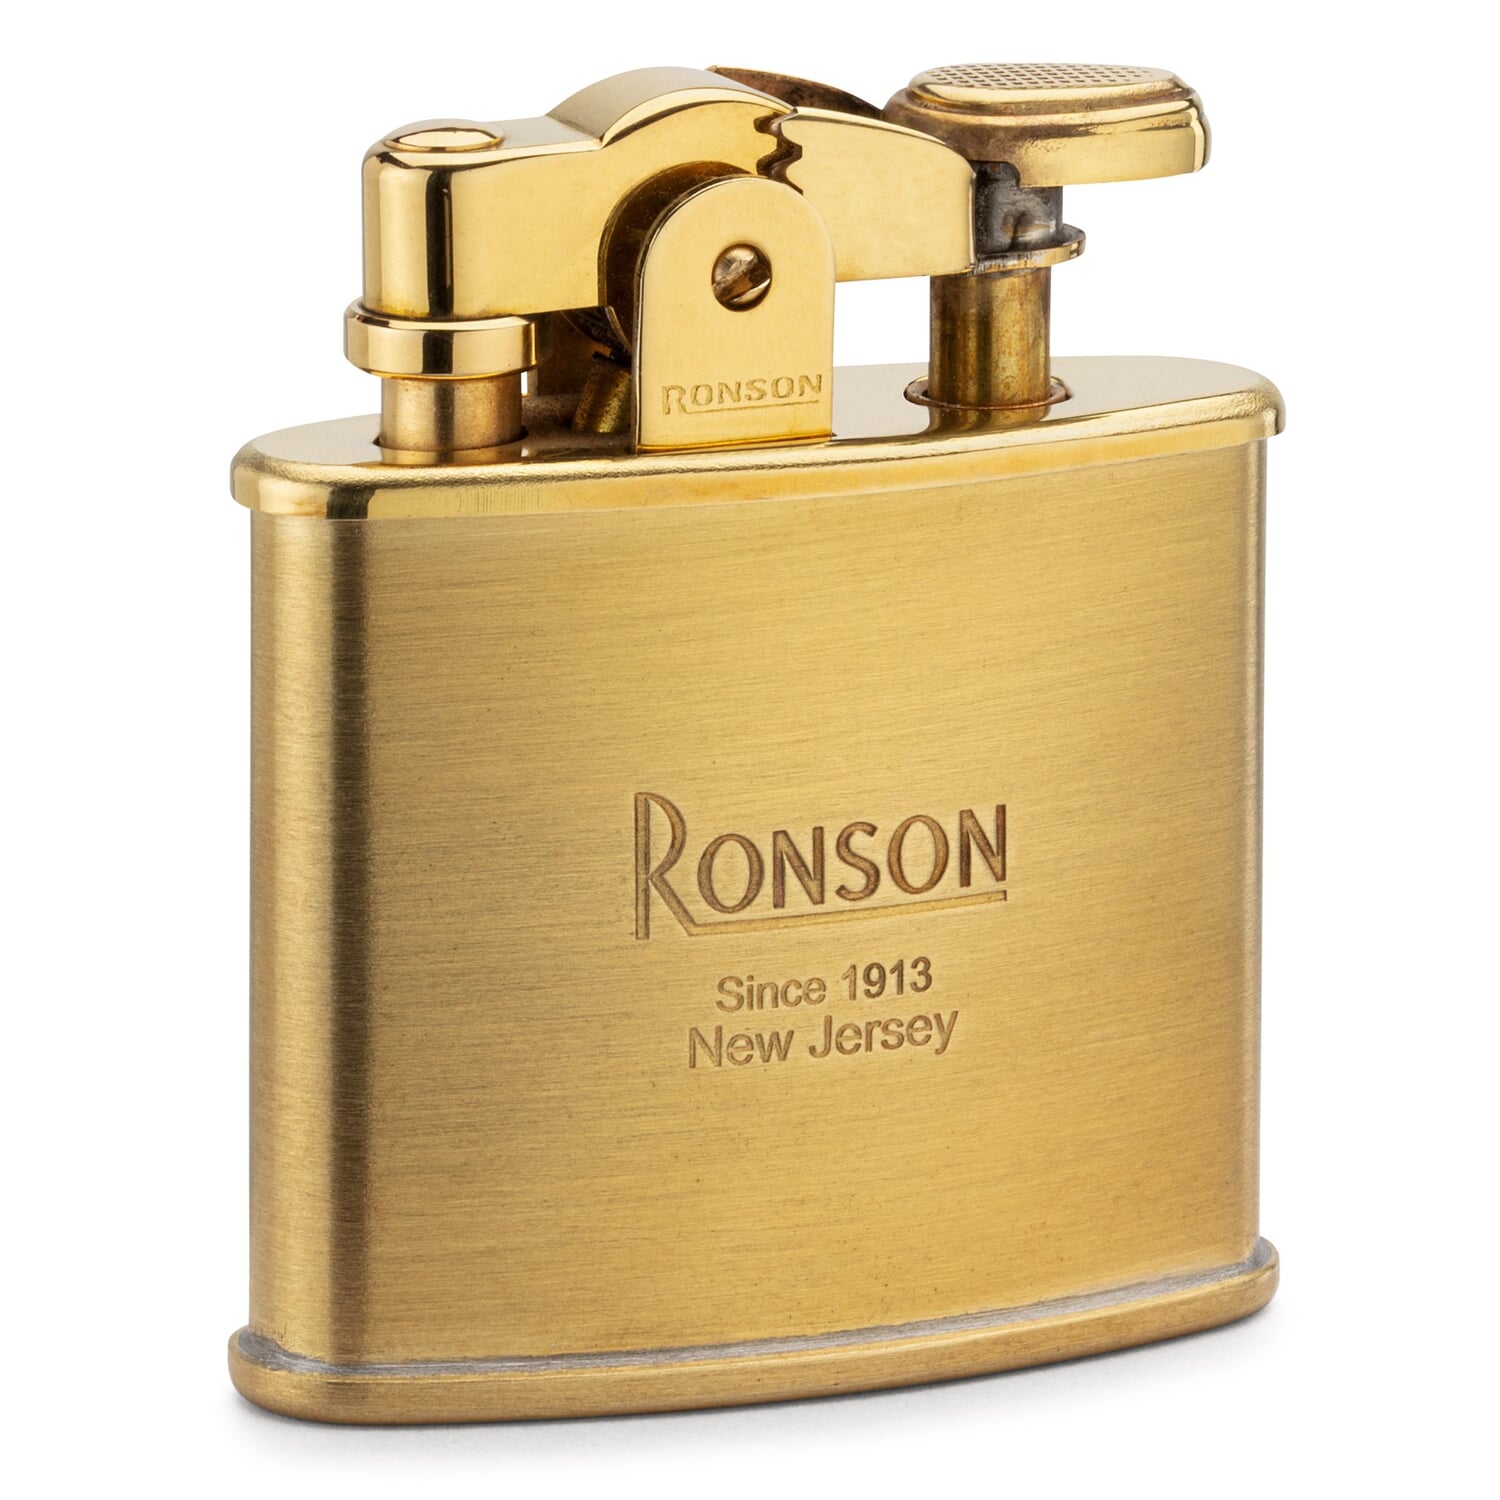 Ronson lighter brass | Manufactum